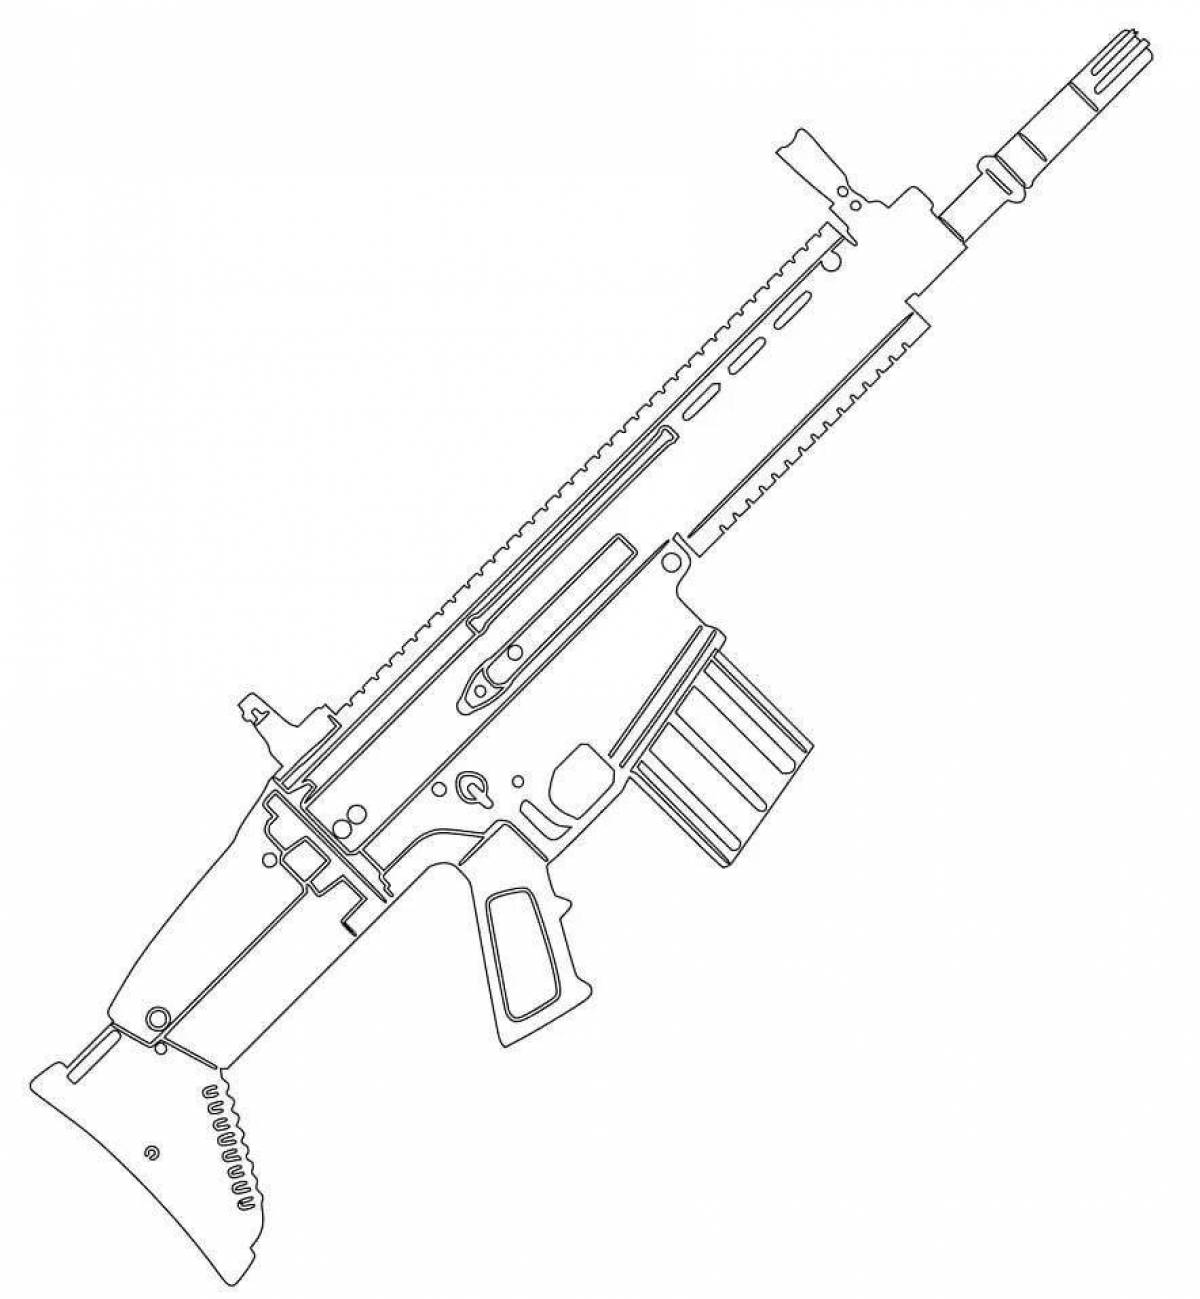 Children's rifle #5